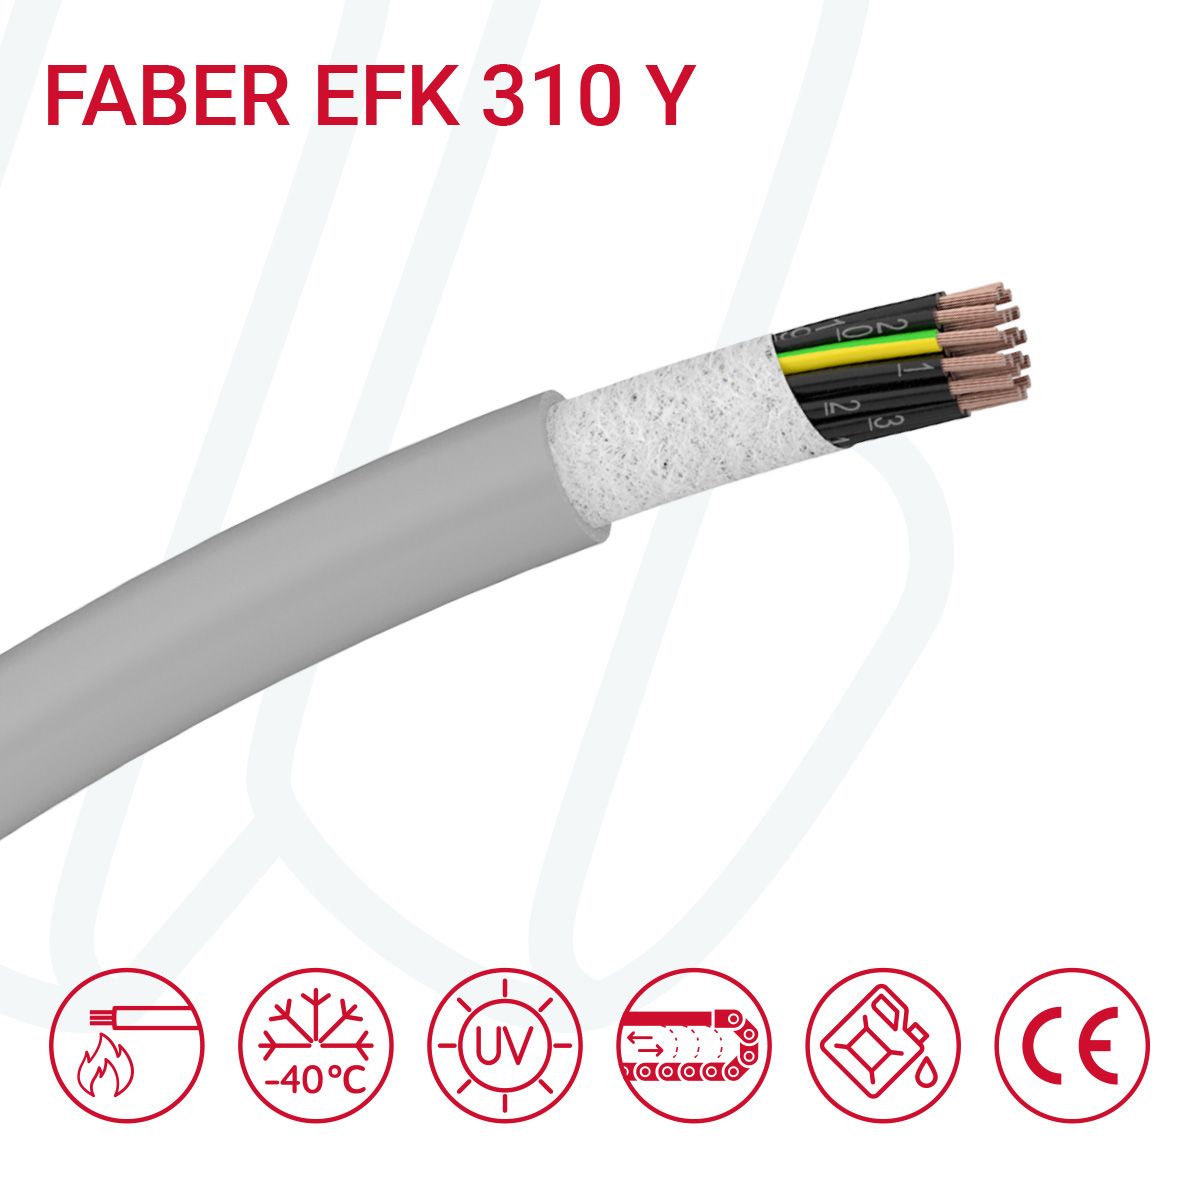 Кабель FABER EFK 310 Y 10G1.5 cUL сірий, 10, 1.5